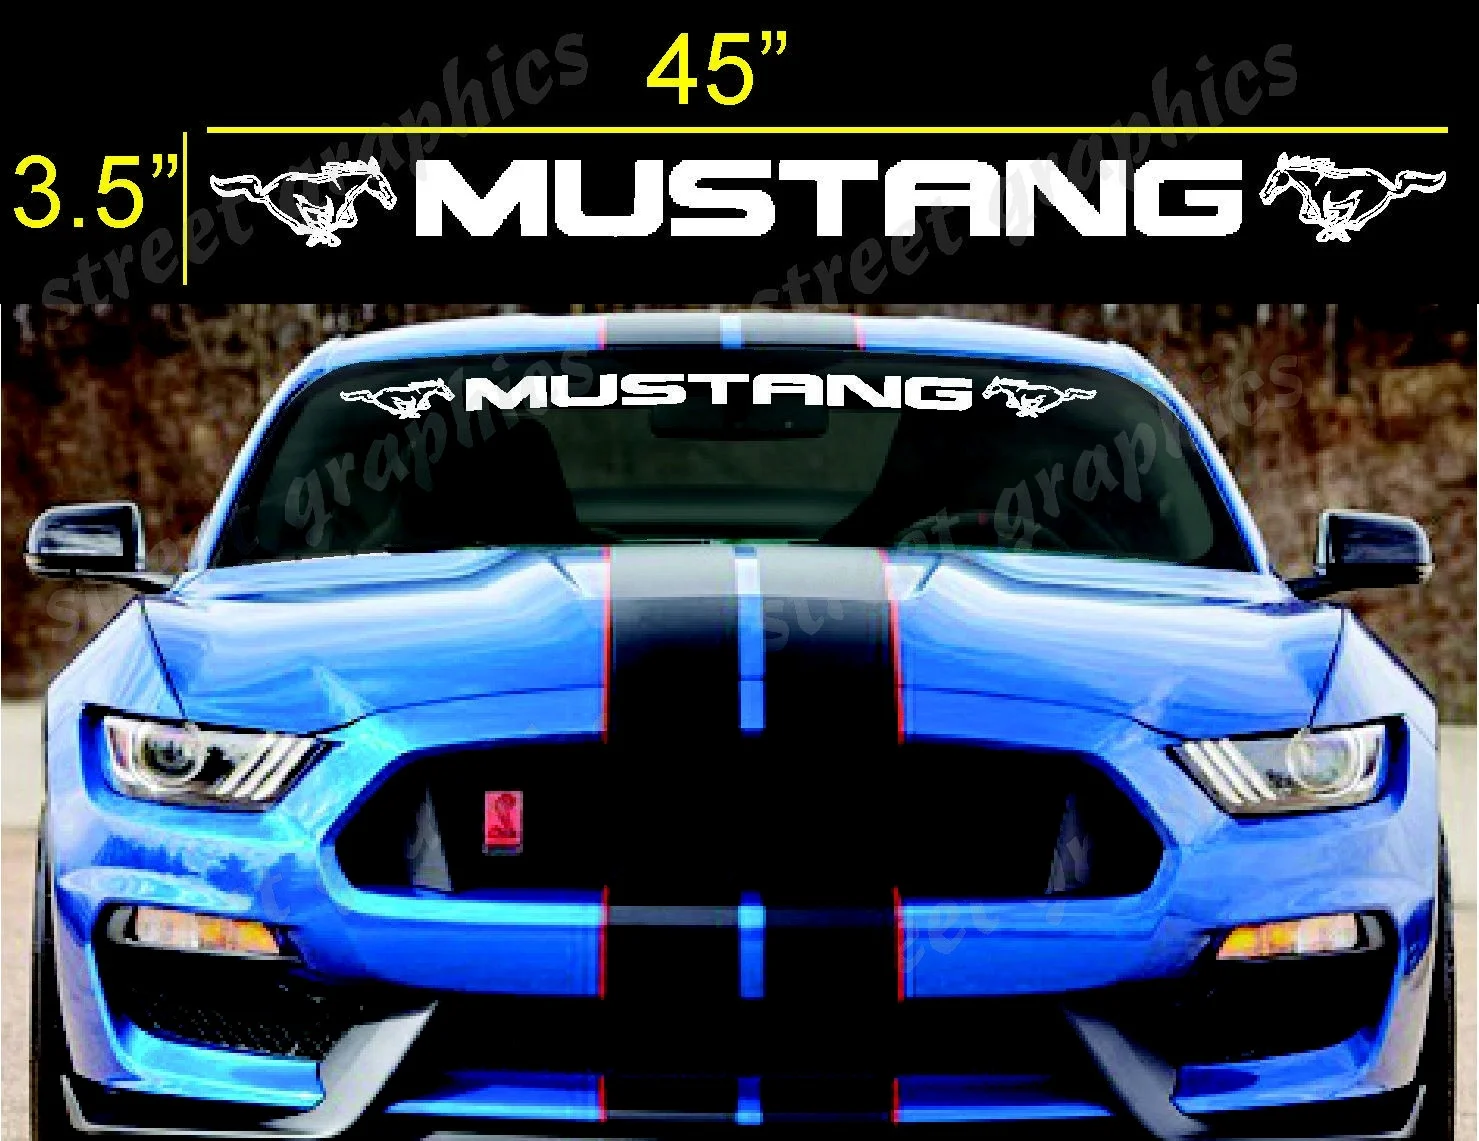 

Для Ford Mustang Bold text GT баннер на лобовое стекло с логотипом виниловая наклейка 3,5 "x 45"